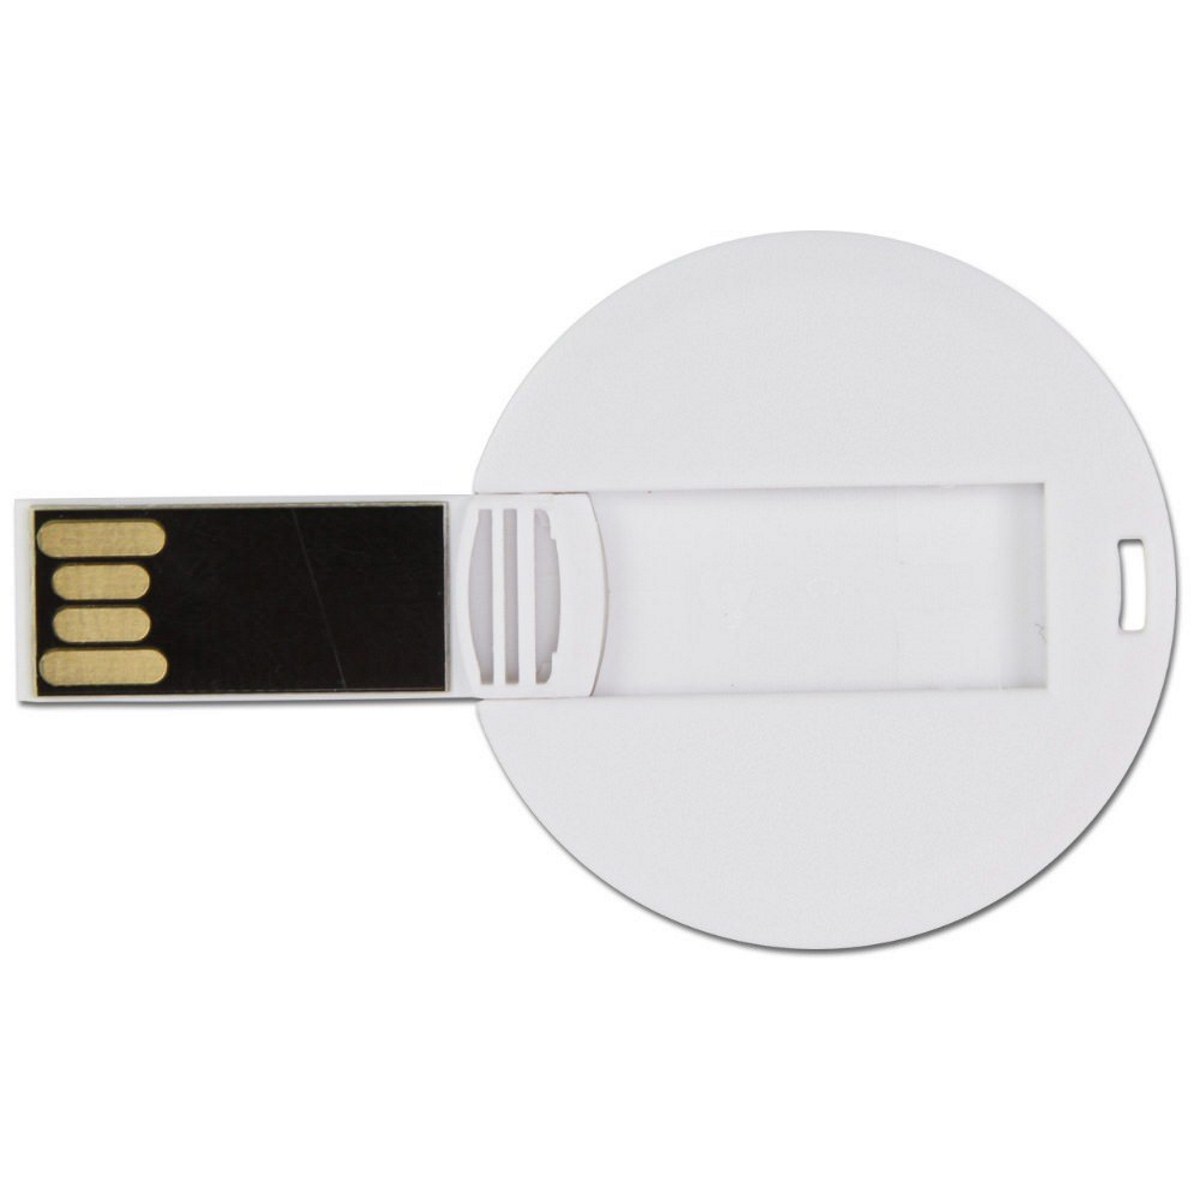 USB GERMANY ® GB) DISC USB-Stick (Weiß, 32